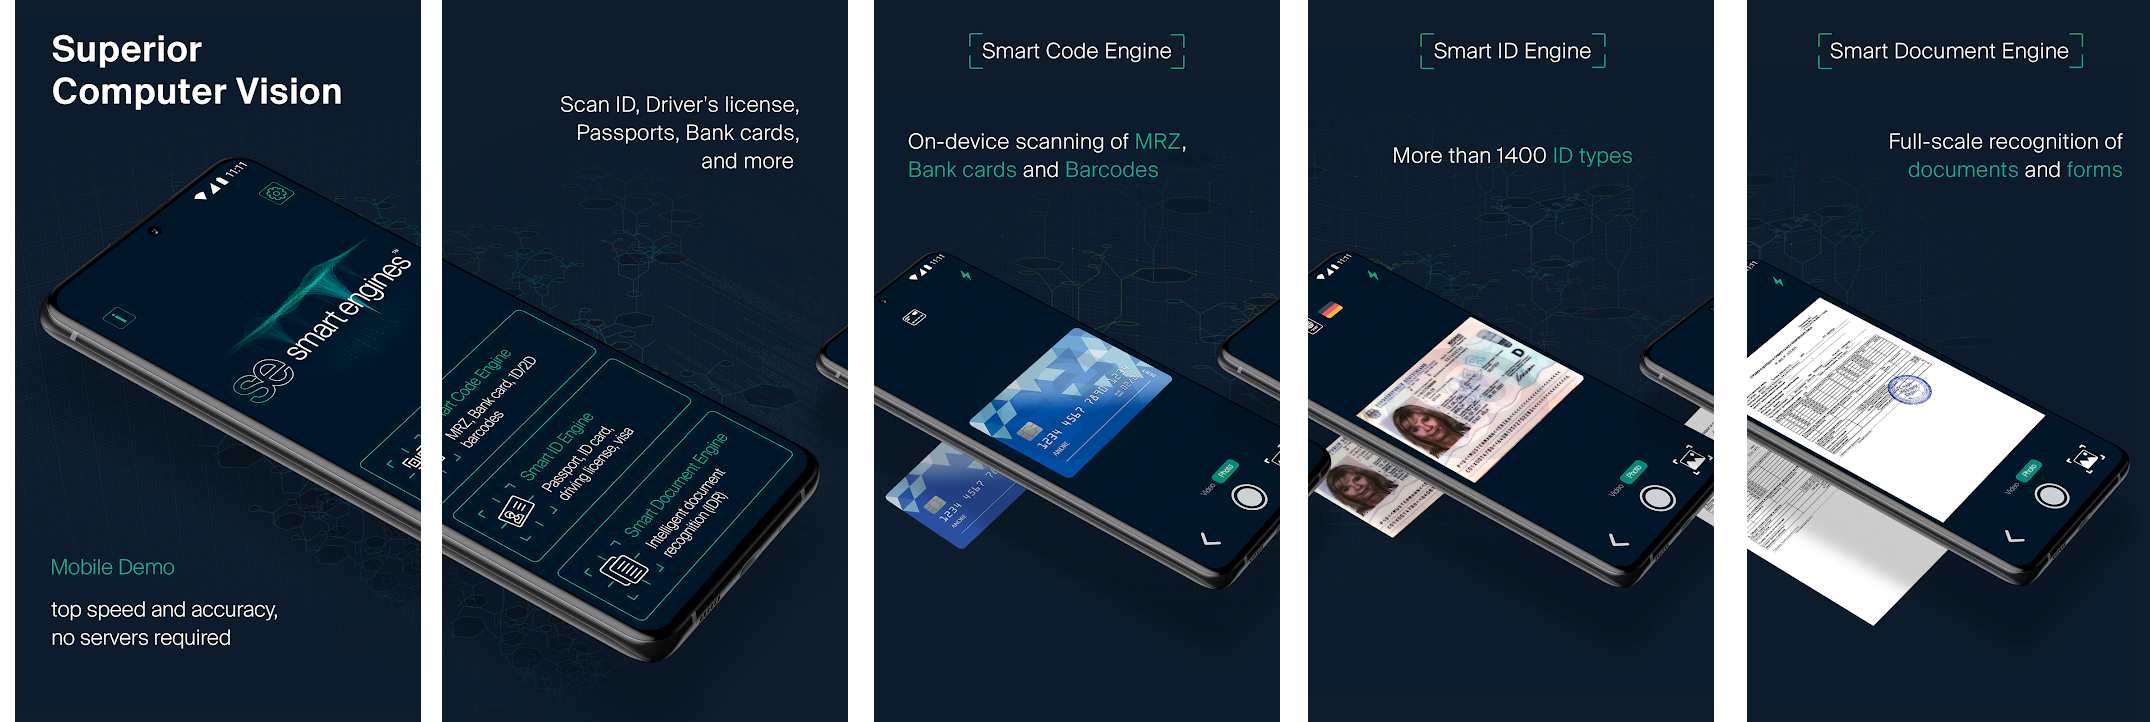 Smart Engines представила новое Android-приложение для распознавания паспортов, банковских карт, баркодов и типовых документов